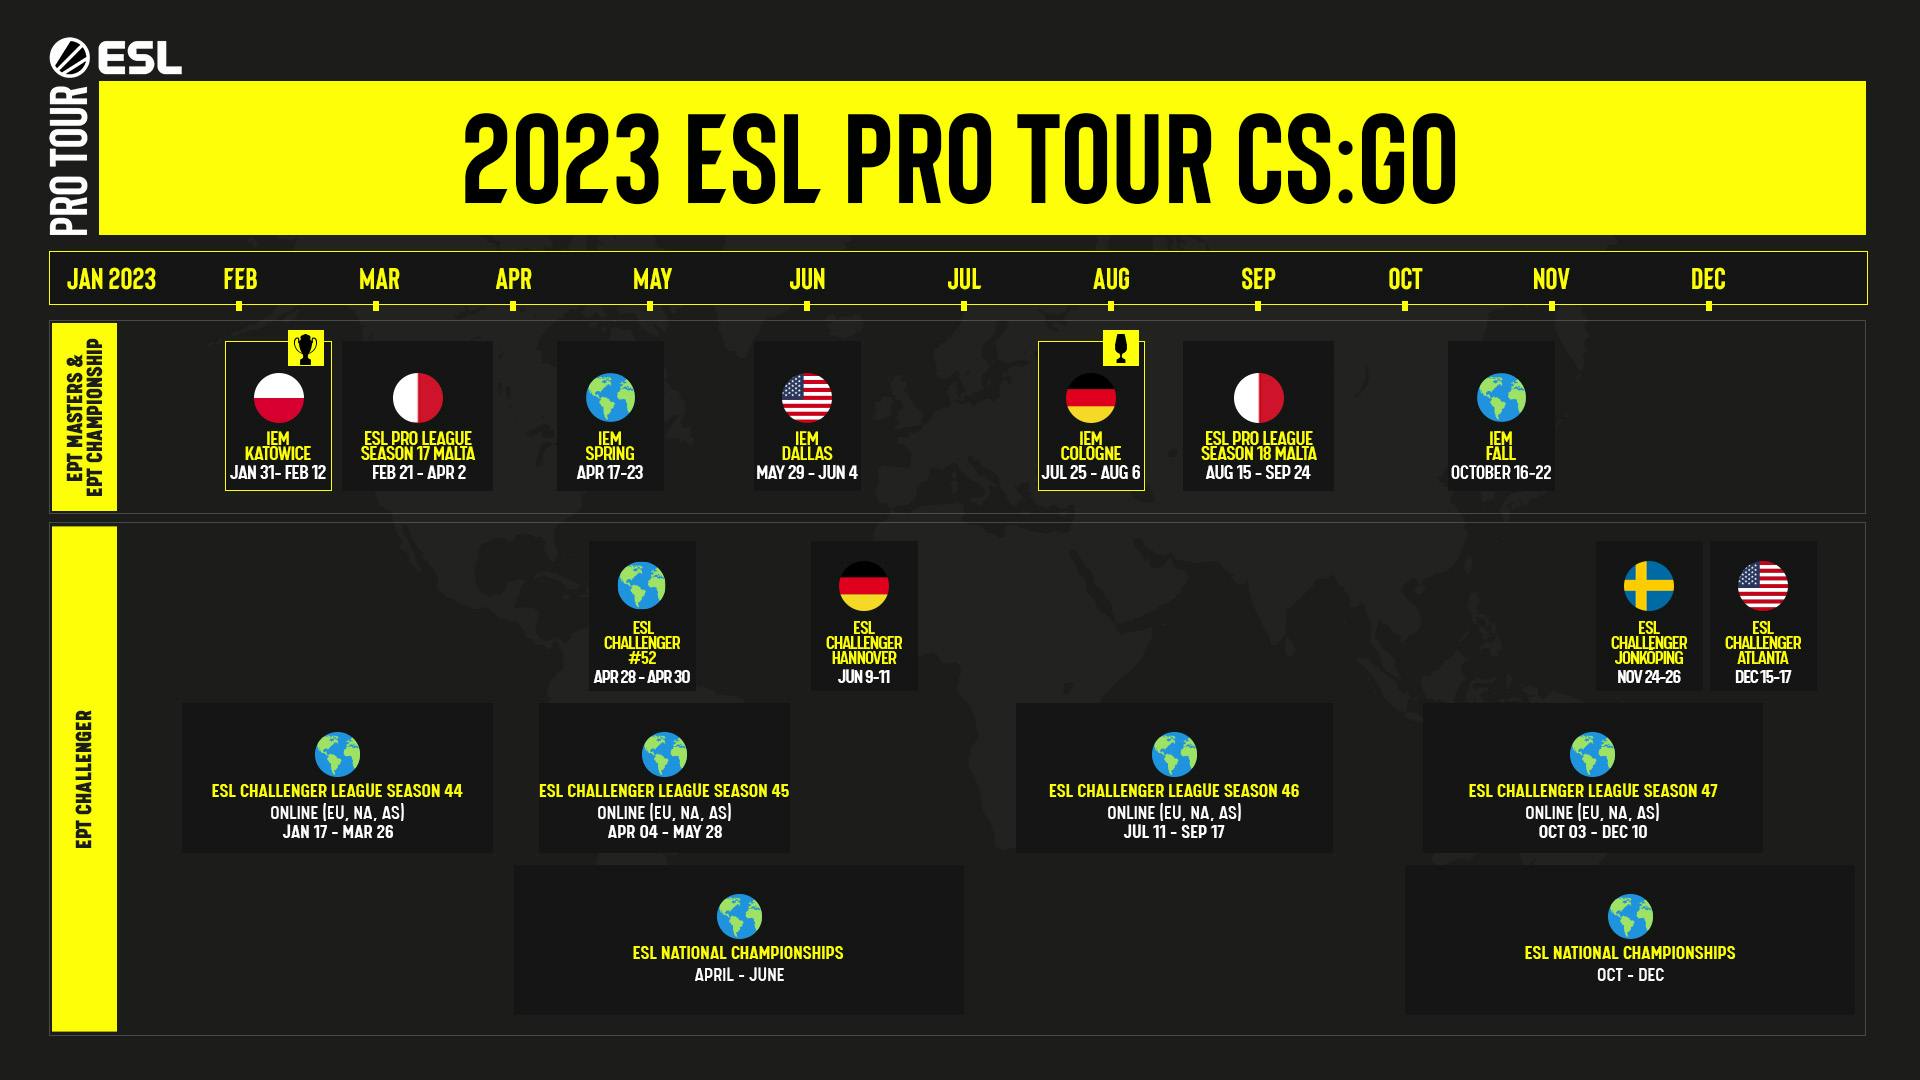 ESL PRO TOUR 2023 PROGRAM - ESL Pro Tour